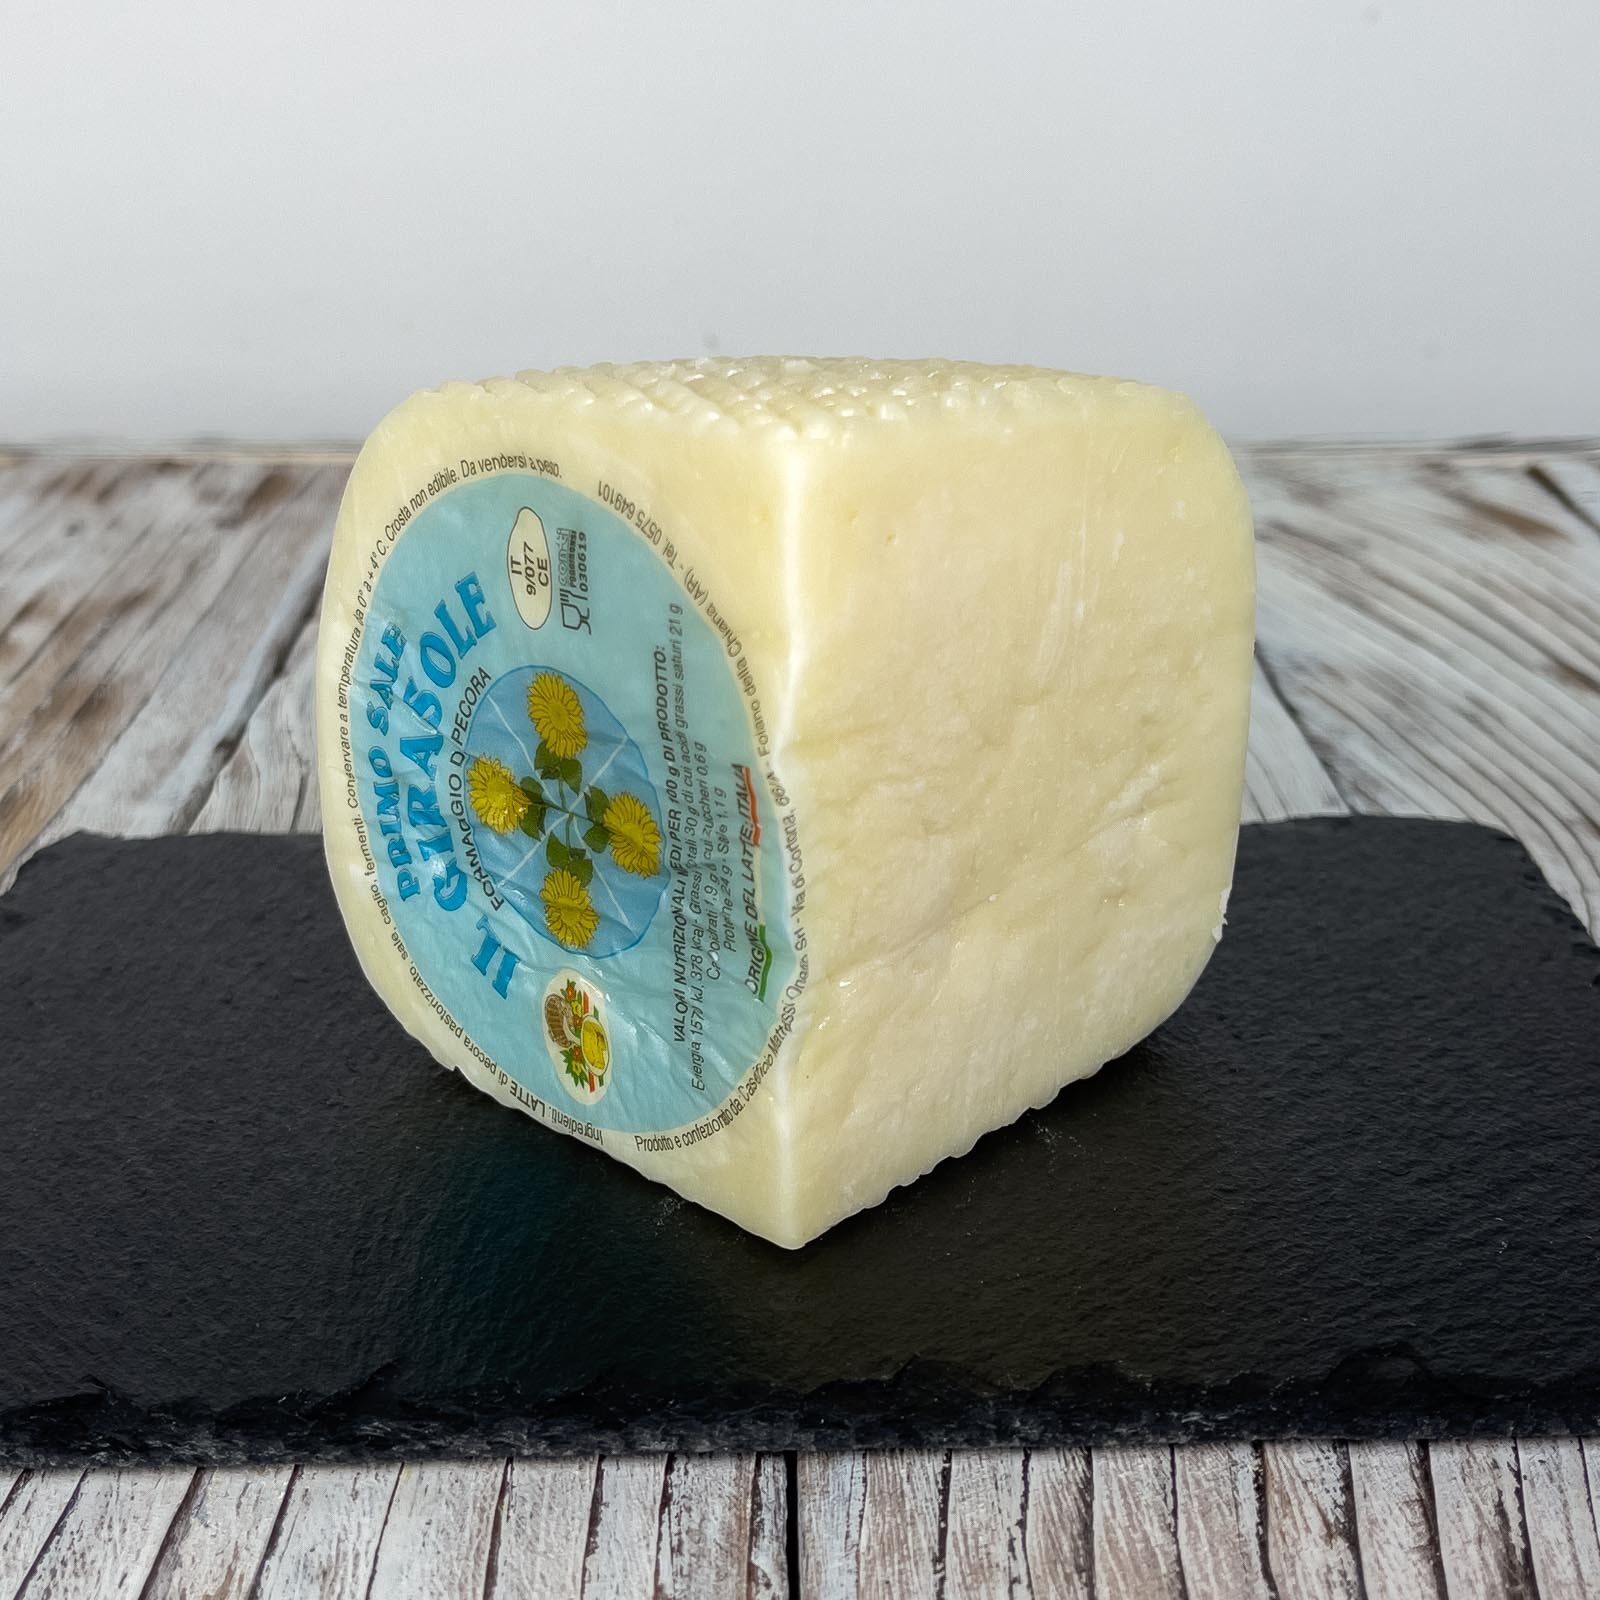 Der „Primo Sale” Pecorino-Käse „Il Girasole” ist ein typisch toskanischer Weichkäse, der aus Schafsvollmilch erster Wahl gewonnen, einem kurzen Reifeprozess unterzogen und vakuumverpackt wird. Es zeichnet sich durch einen süßen und leichten Geschmack sowie einen sehr frischen und zarten Duft aus.